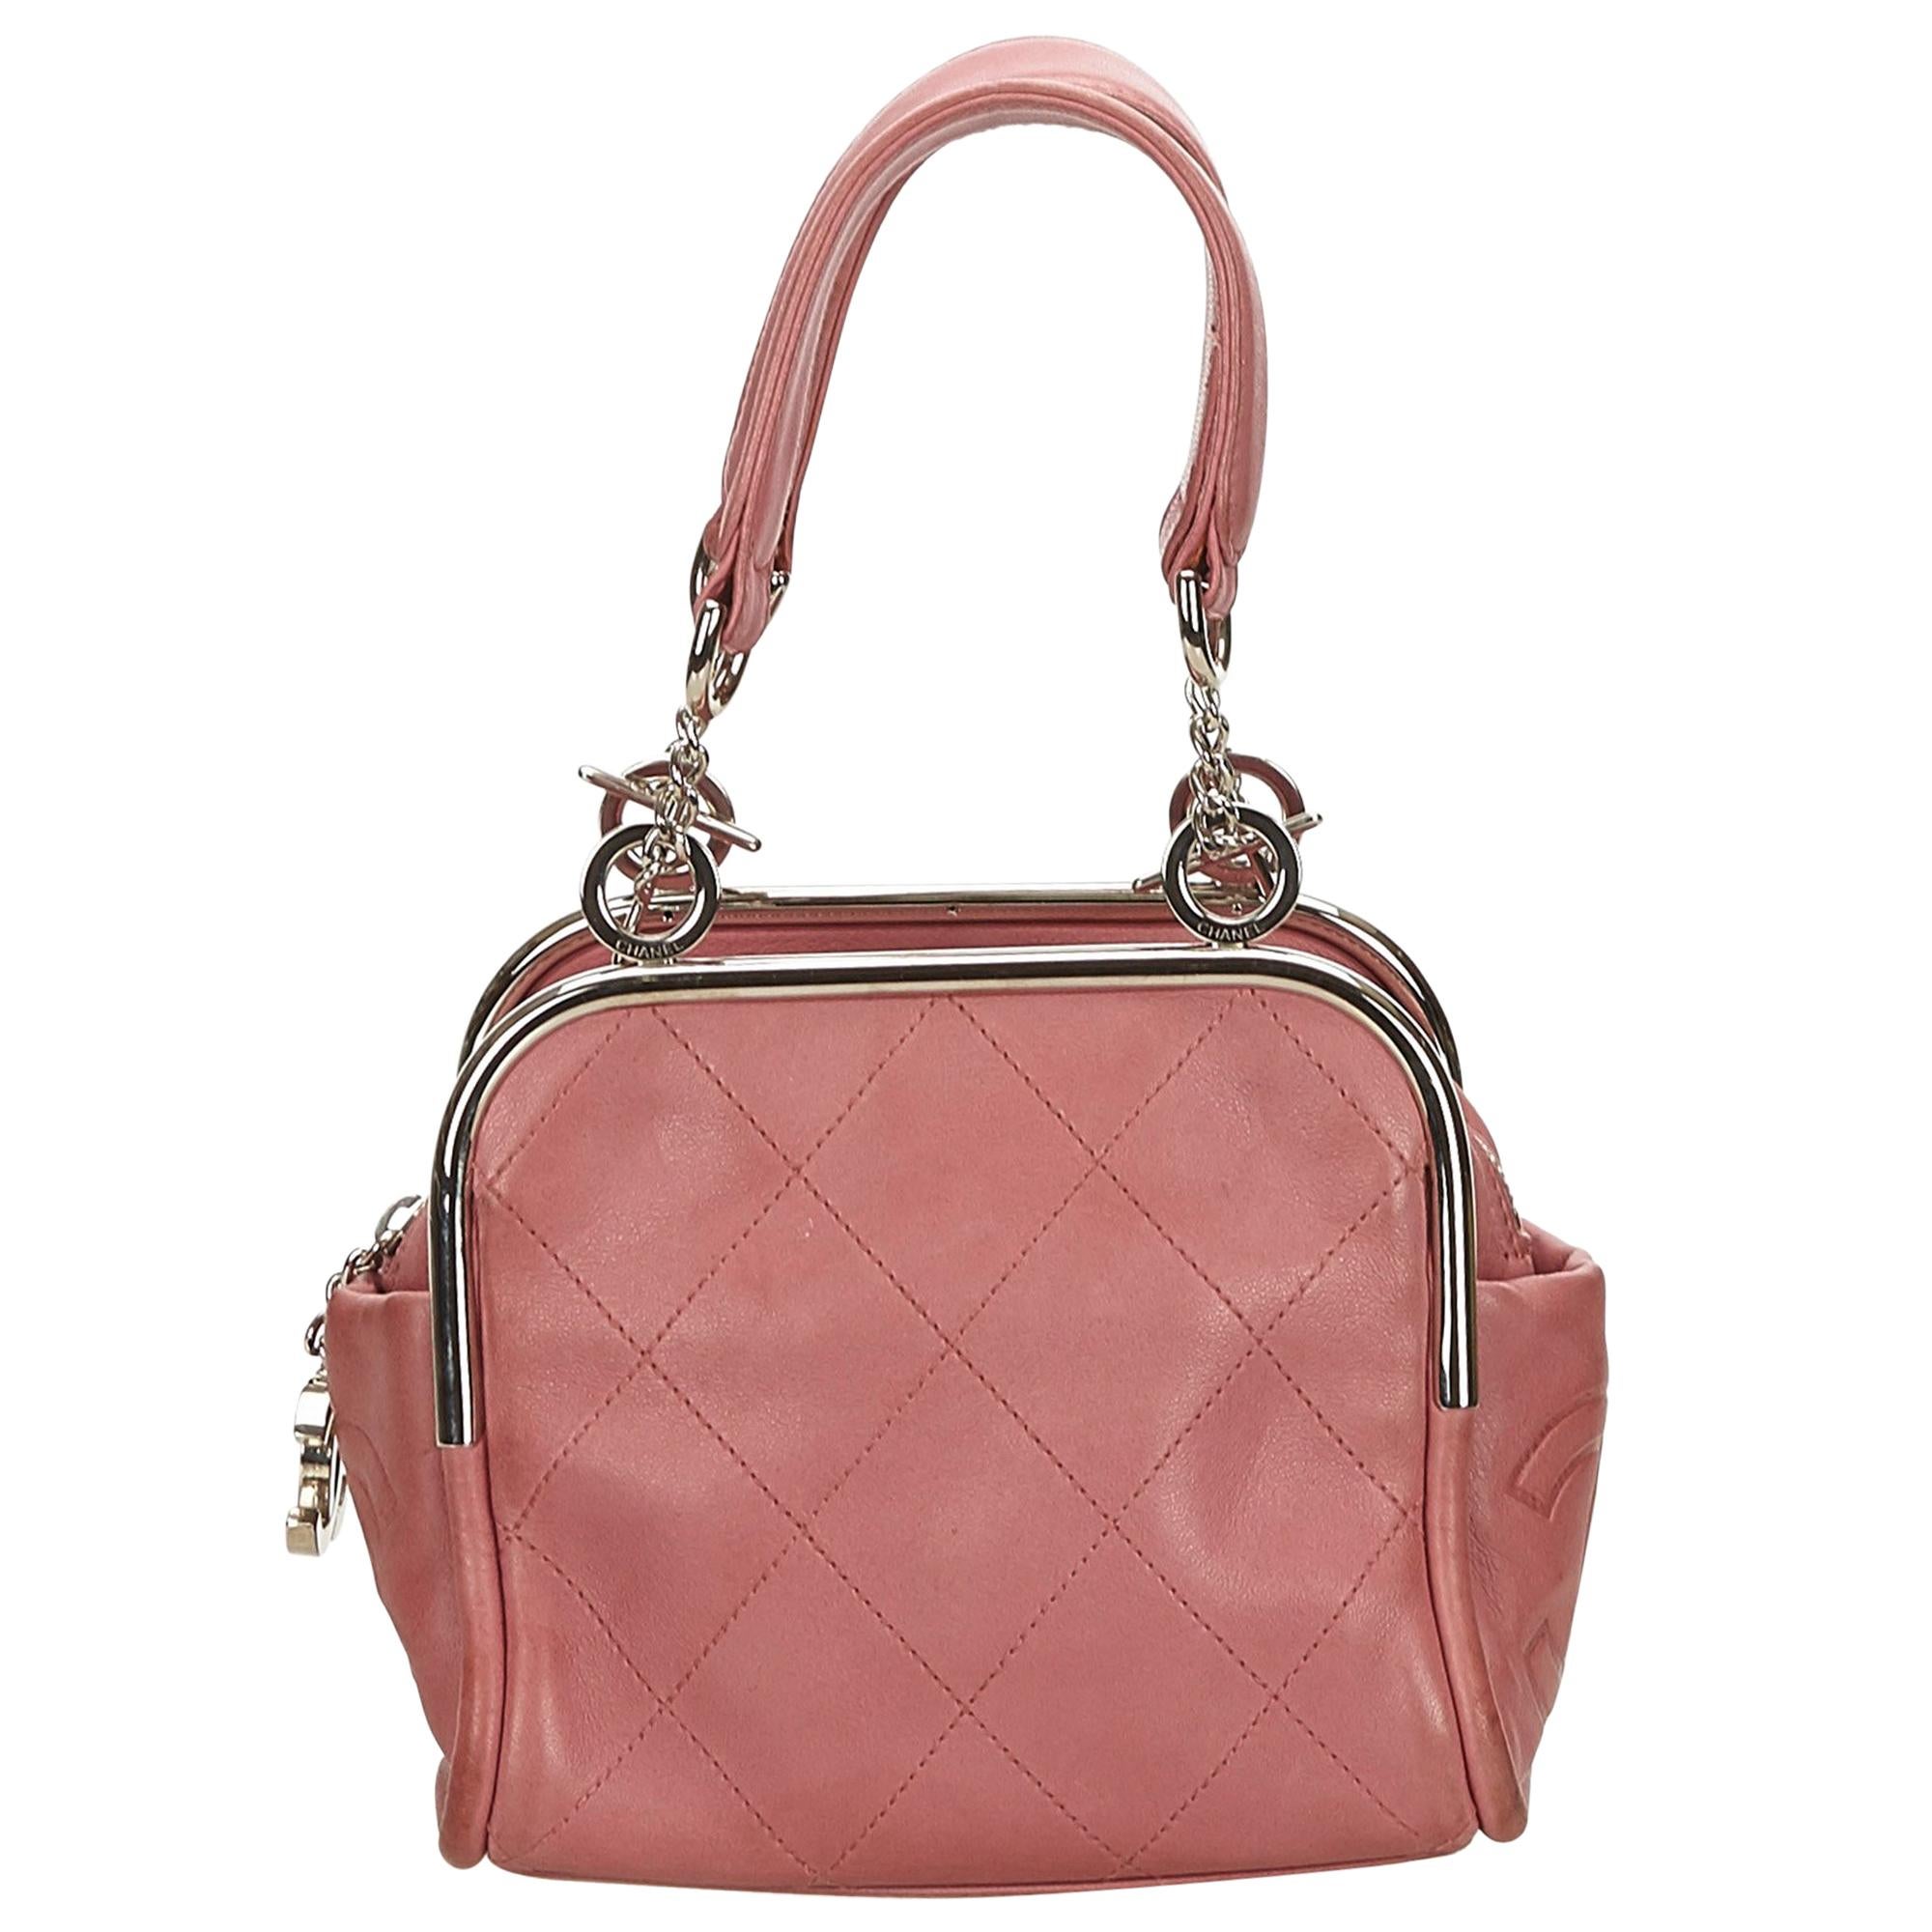 Chanel Pink Wild Stitch Lambskin Handbag